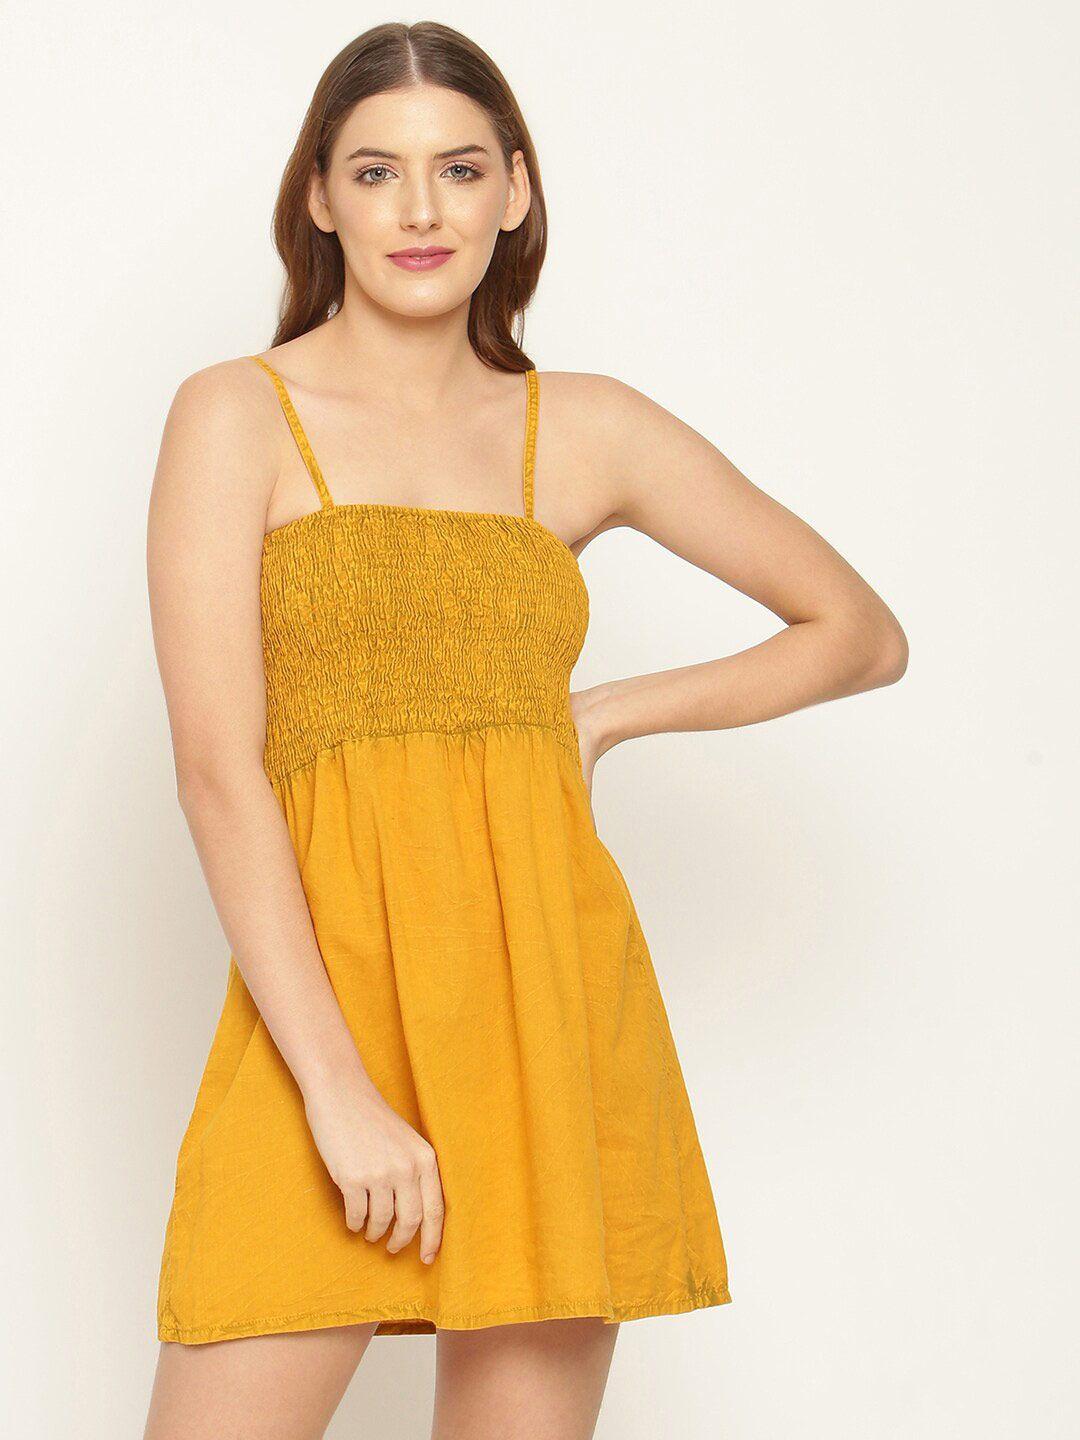 baesd mustard yellow dress